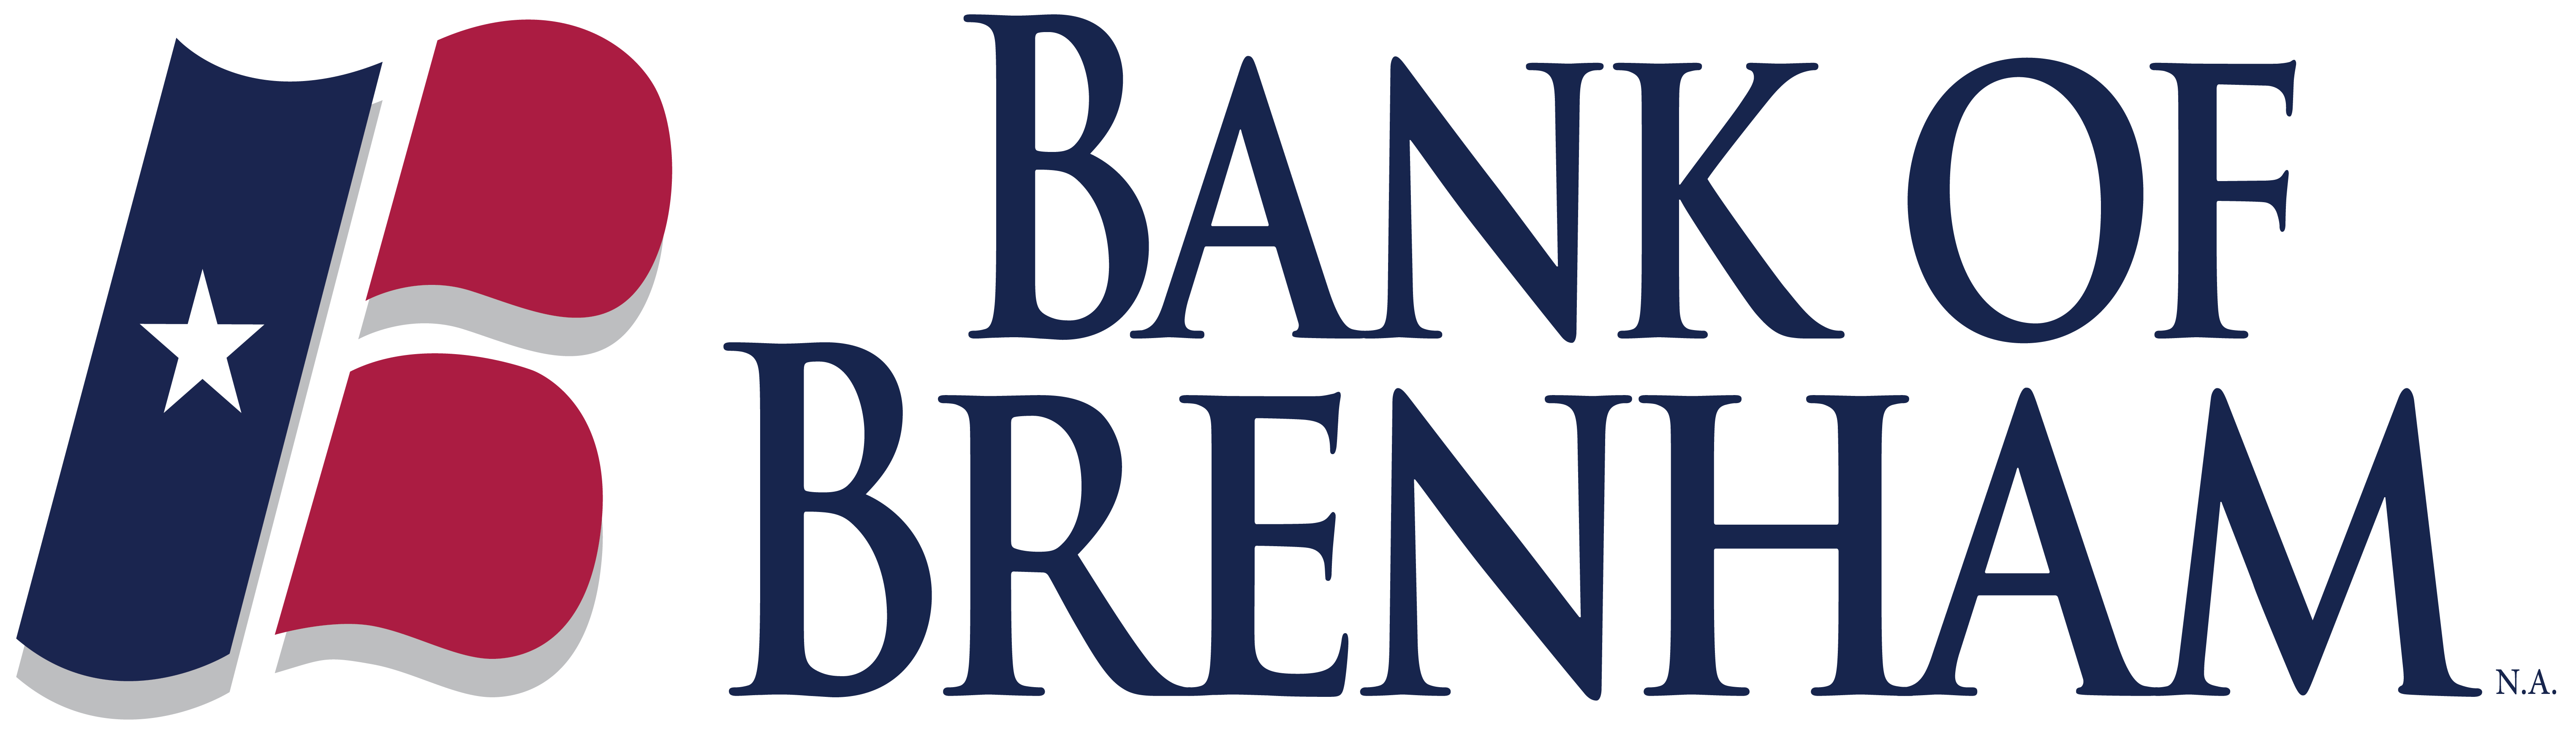 Bank of Brenham NEW 2019